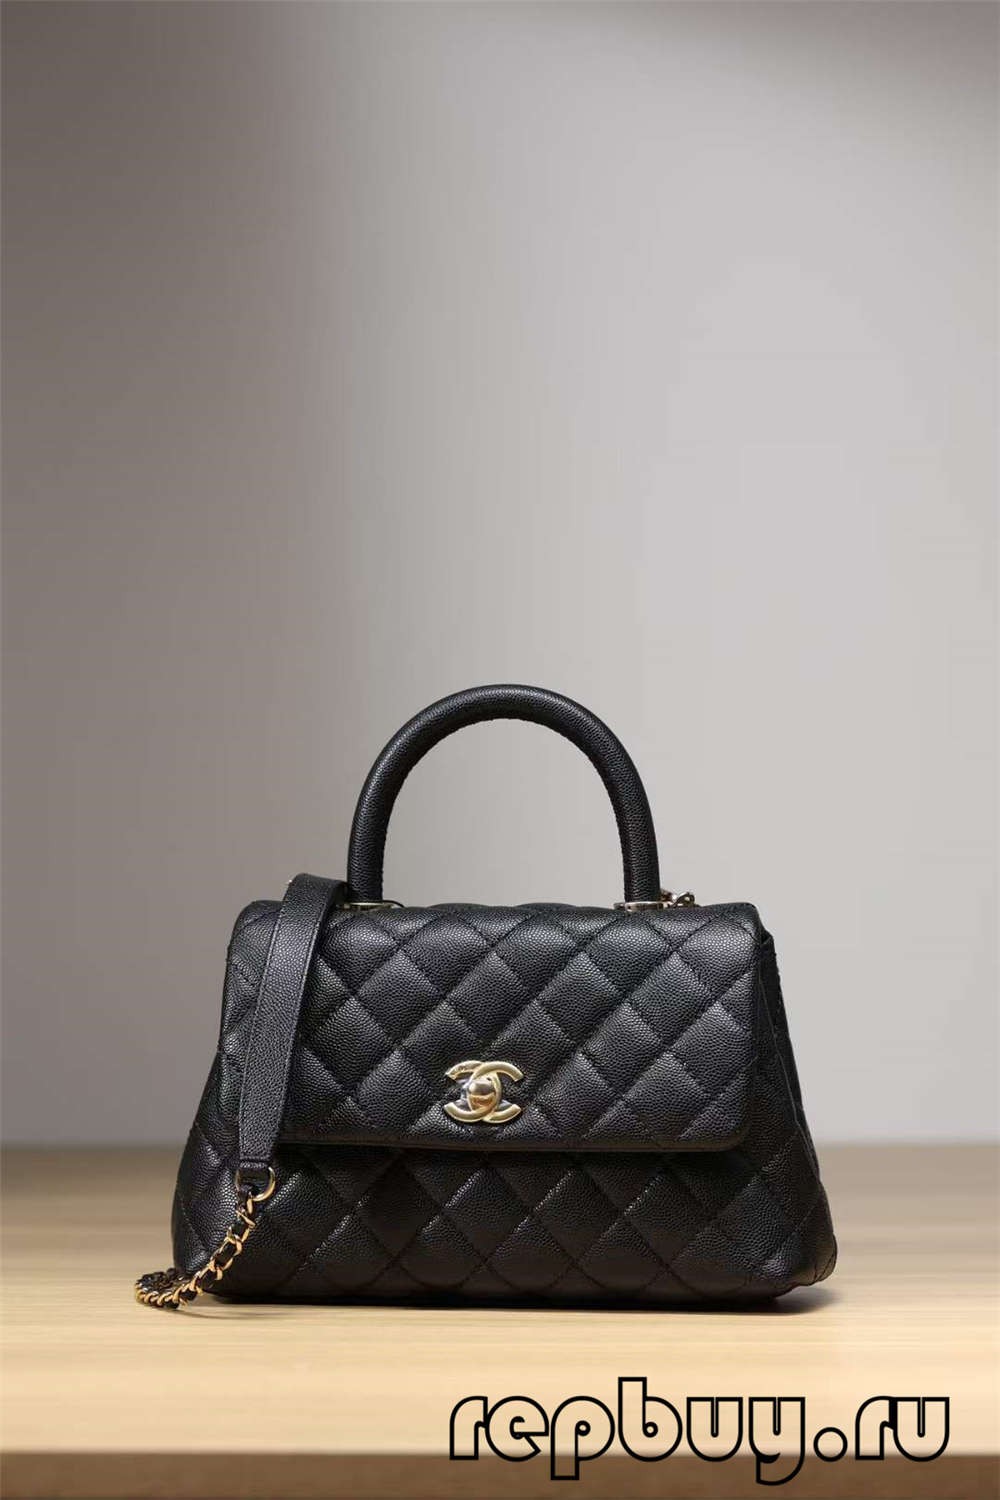 Chanel Coco Handle Top Replica Handbag Black Gold Buckle Look (Atualizado 2022) - Loja online de bolsa Louis Vuitton falsa de melhor qualidade, bolsa de designer de réplica ru